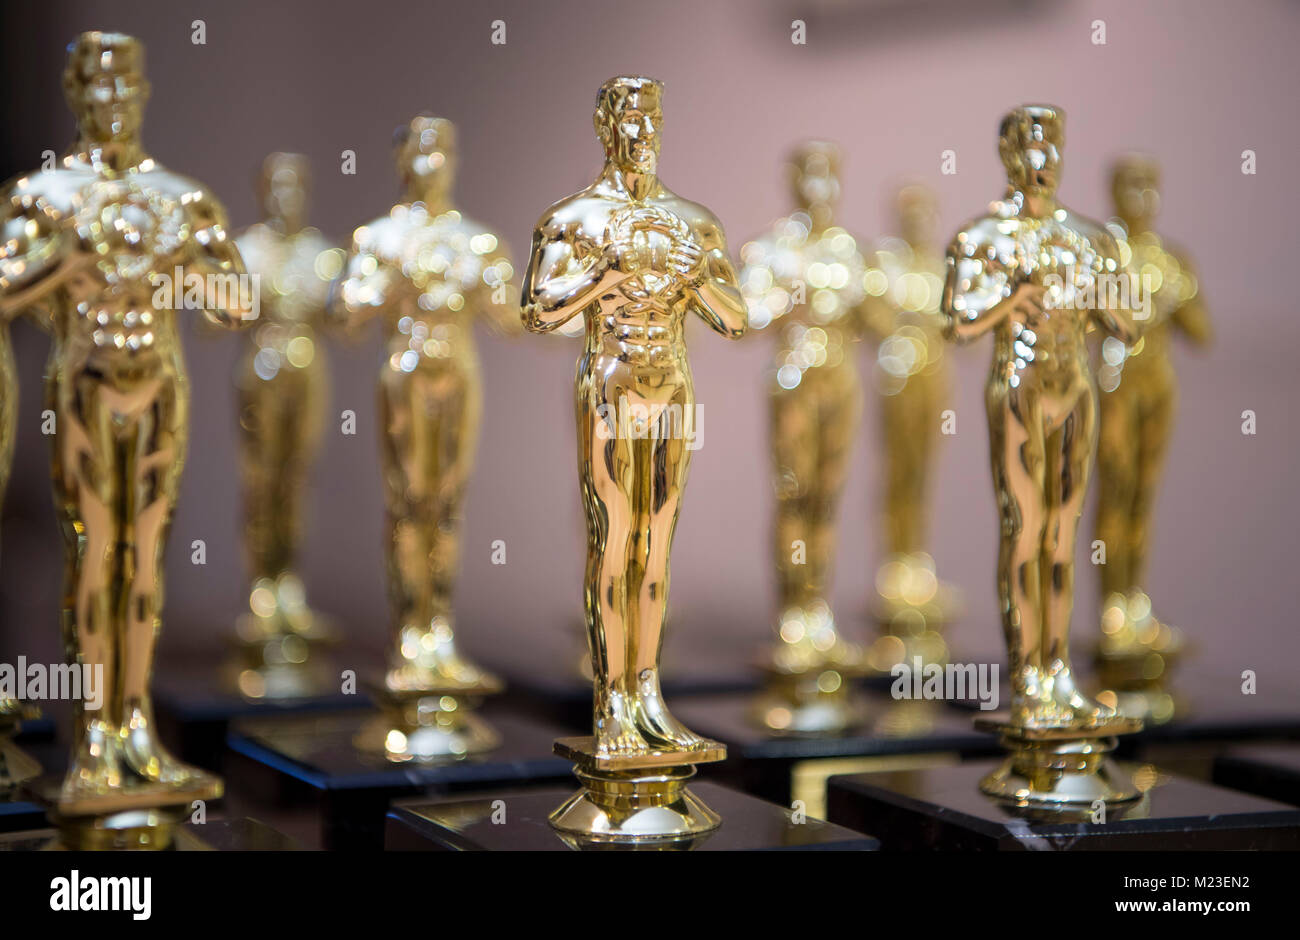 Die Imitation der Goldenen Oscars wurde während einer Preisverleihung gesehen. Stockfoto